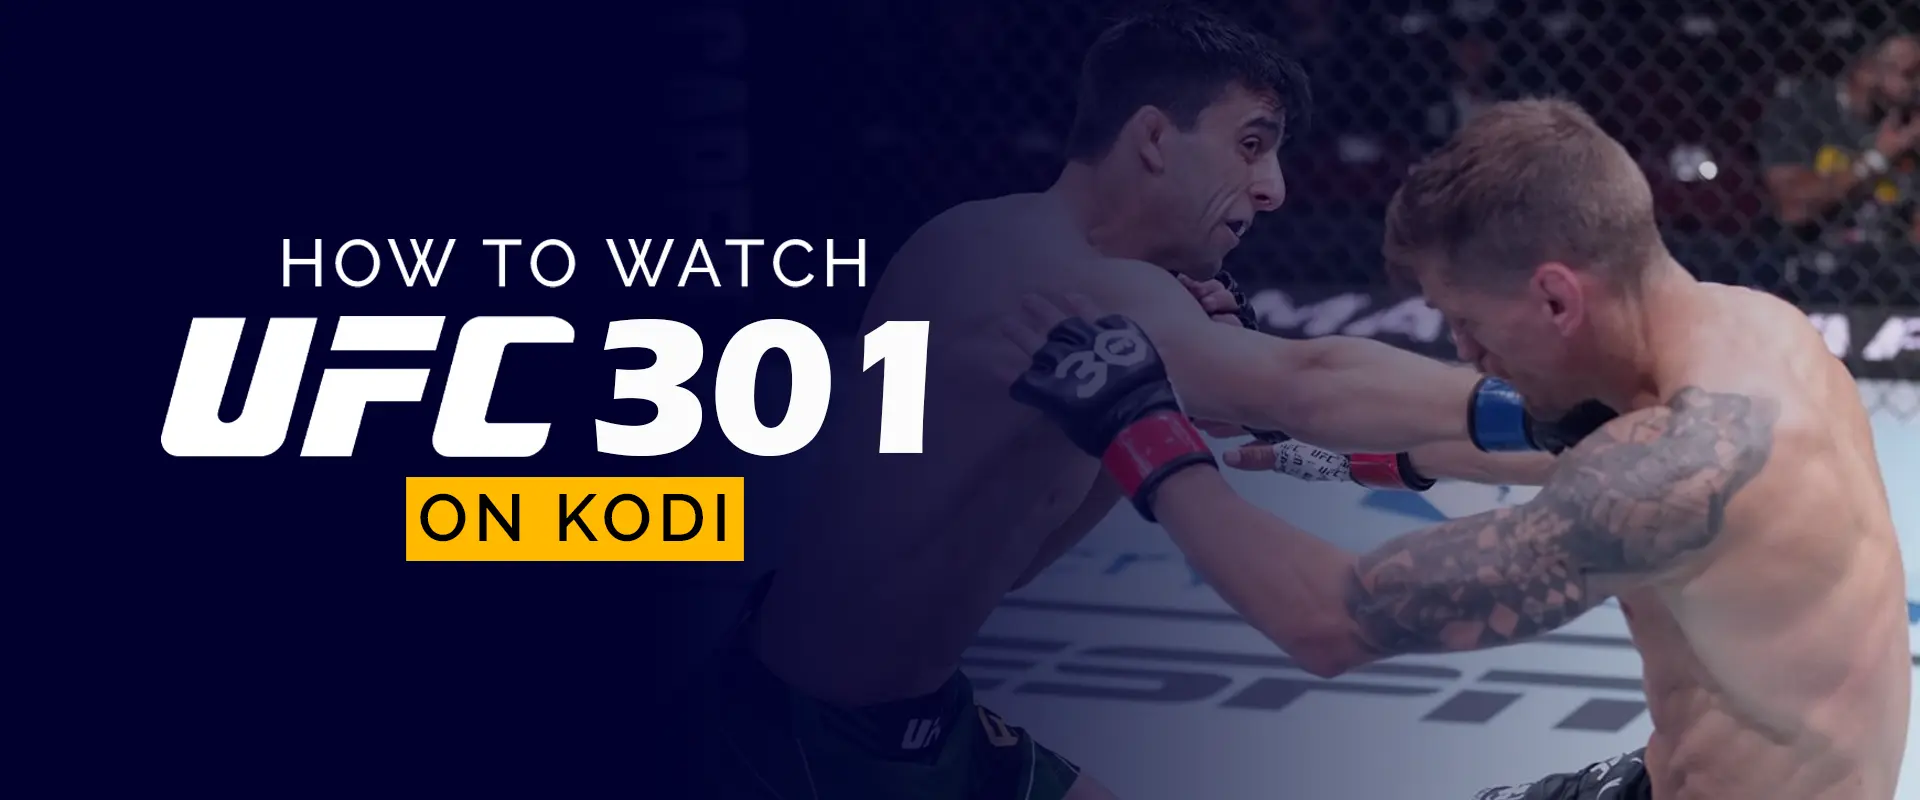 How-to-Watch-UFC-301-on-Kodi